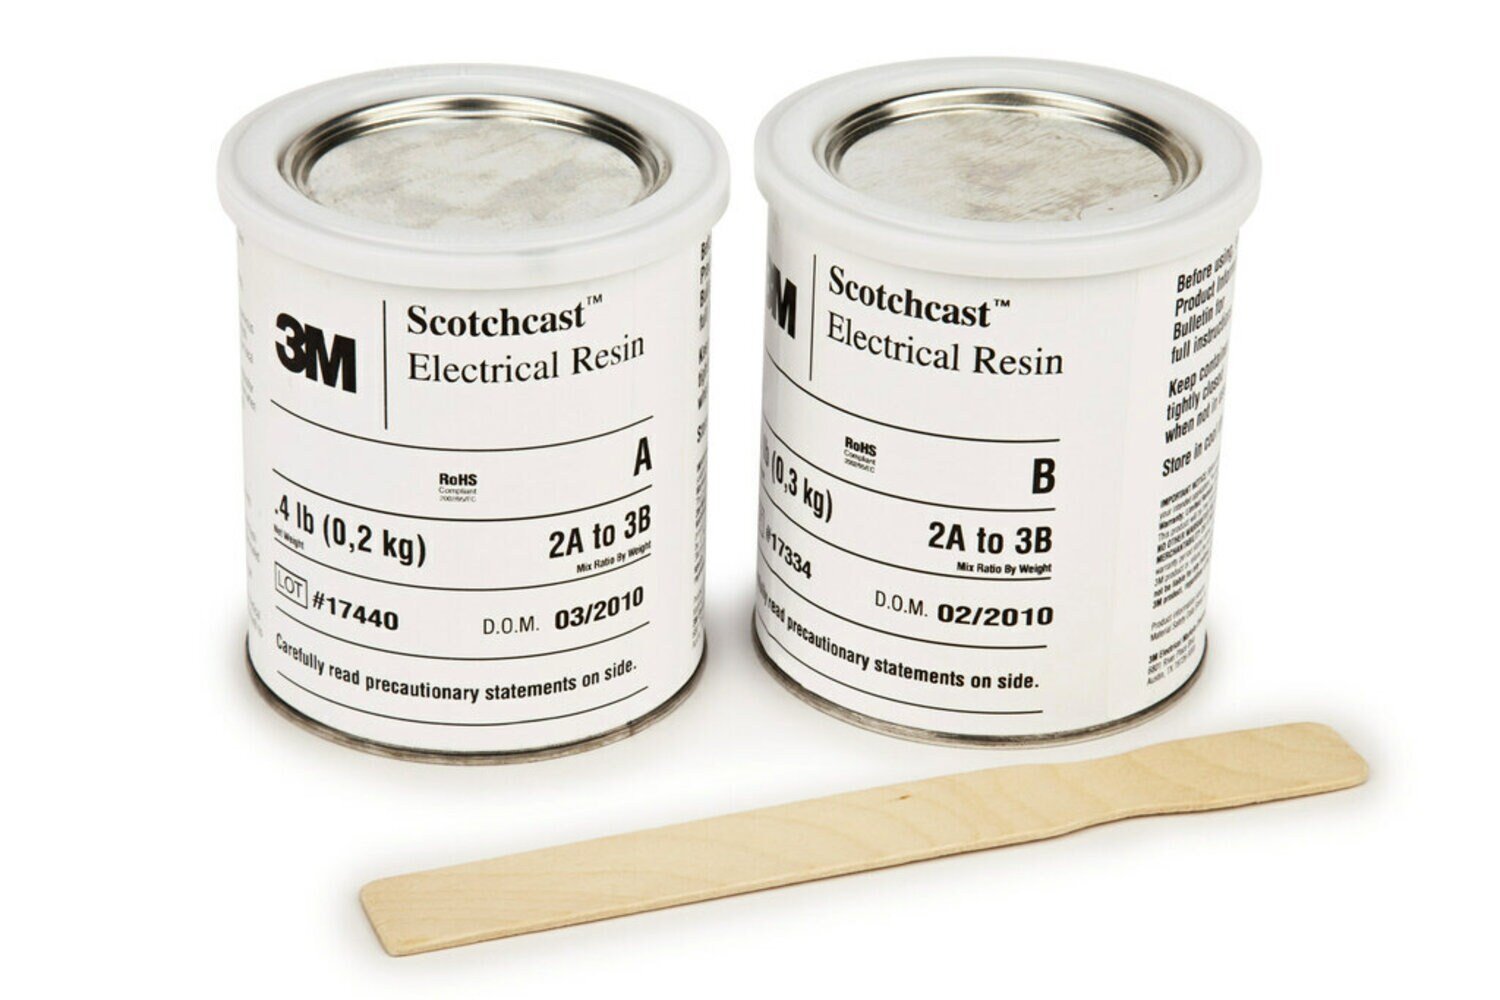 7000058912 - 3M Scotchcast Electrical Resin 235 Part B (40 lb), 1 Kit/Drum